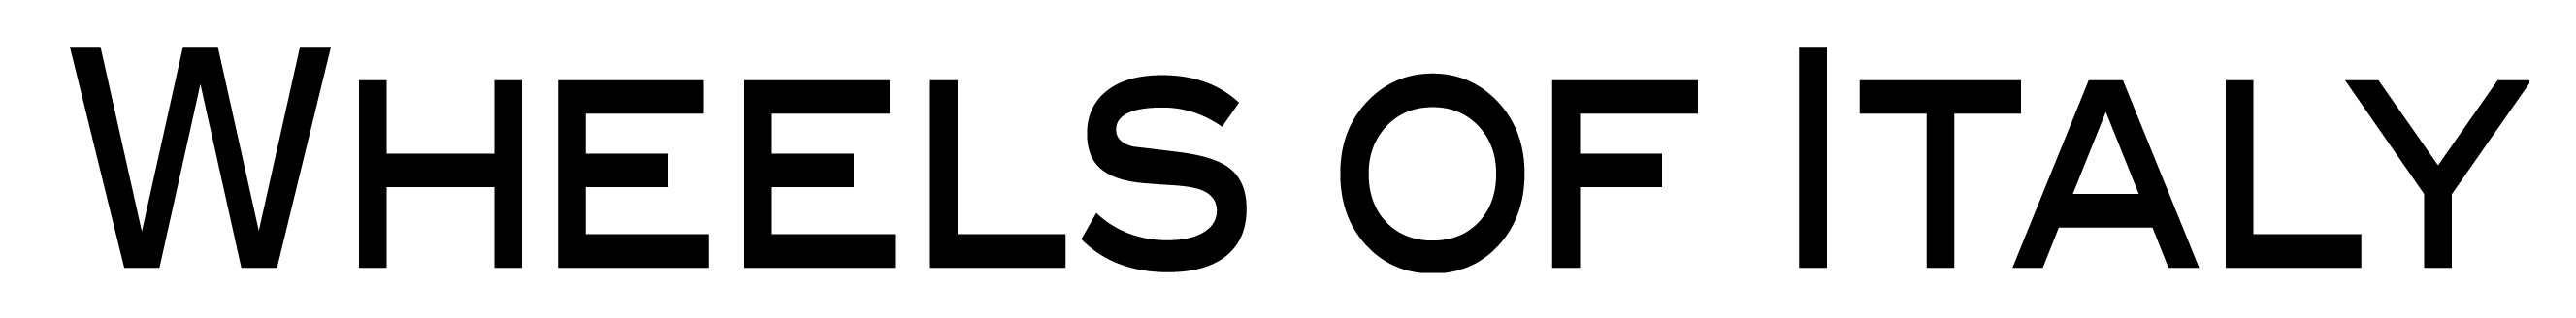 WOI logo script.jpg